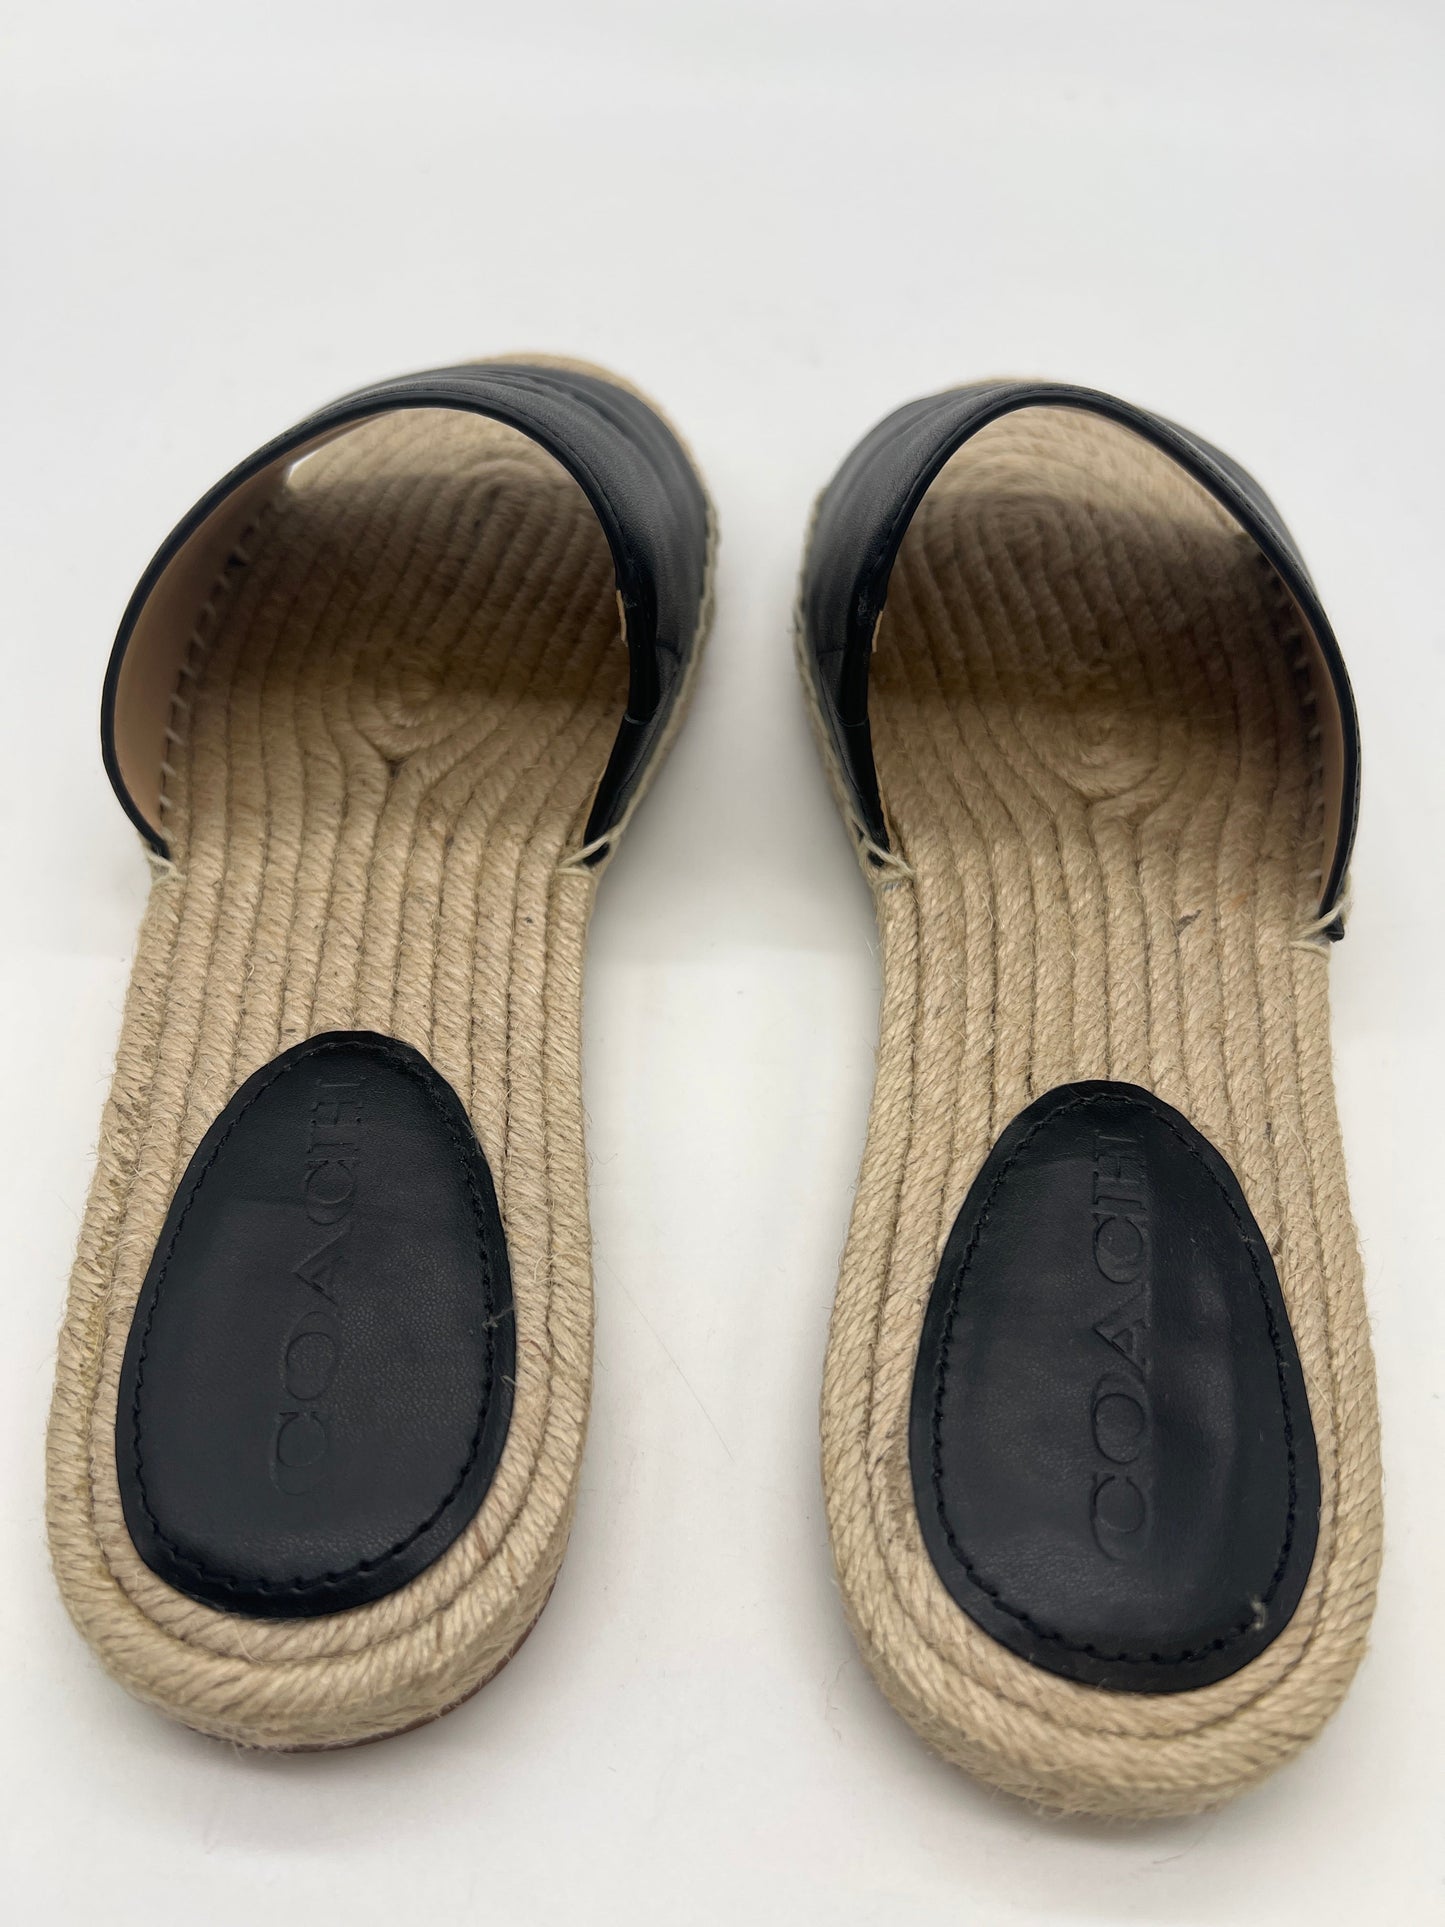 Black Sandals Flats Coach, Size 8